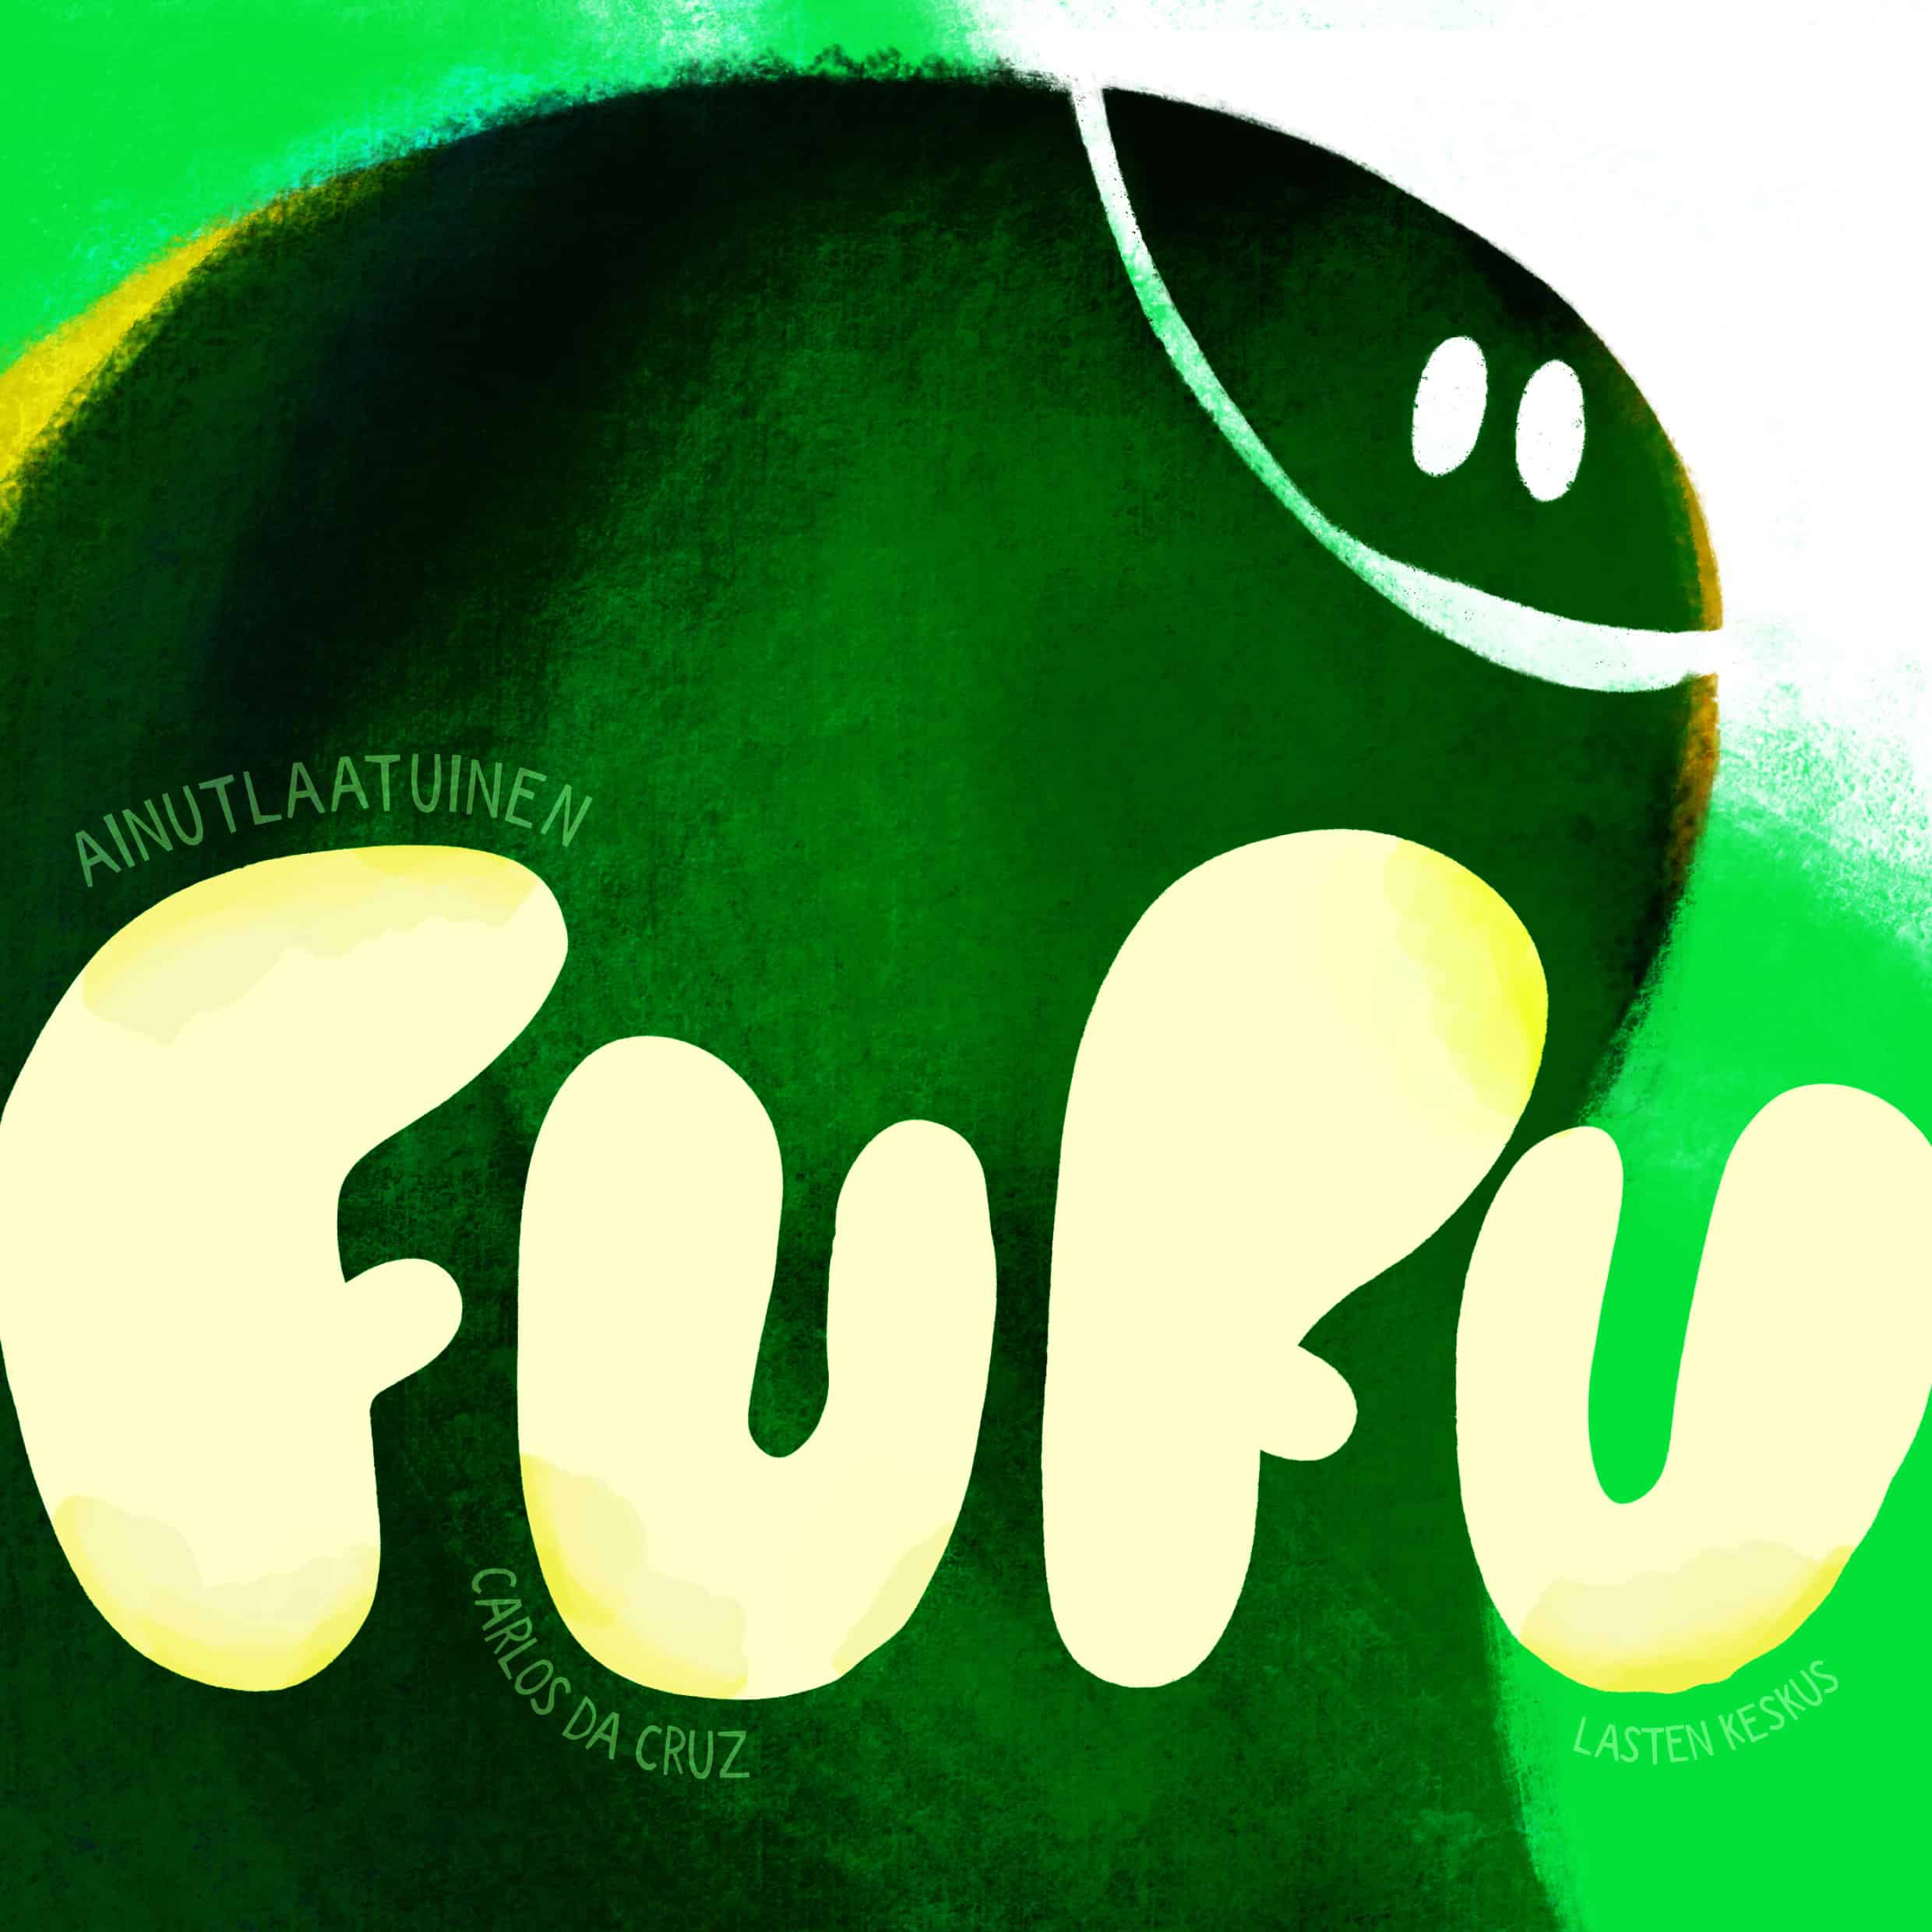 Ainutlaatuinen Fufu